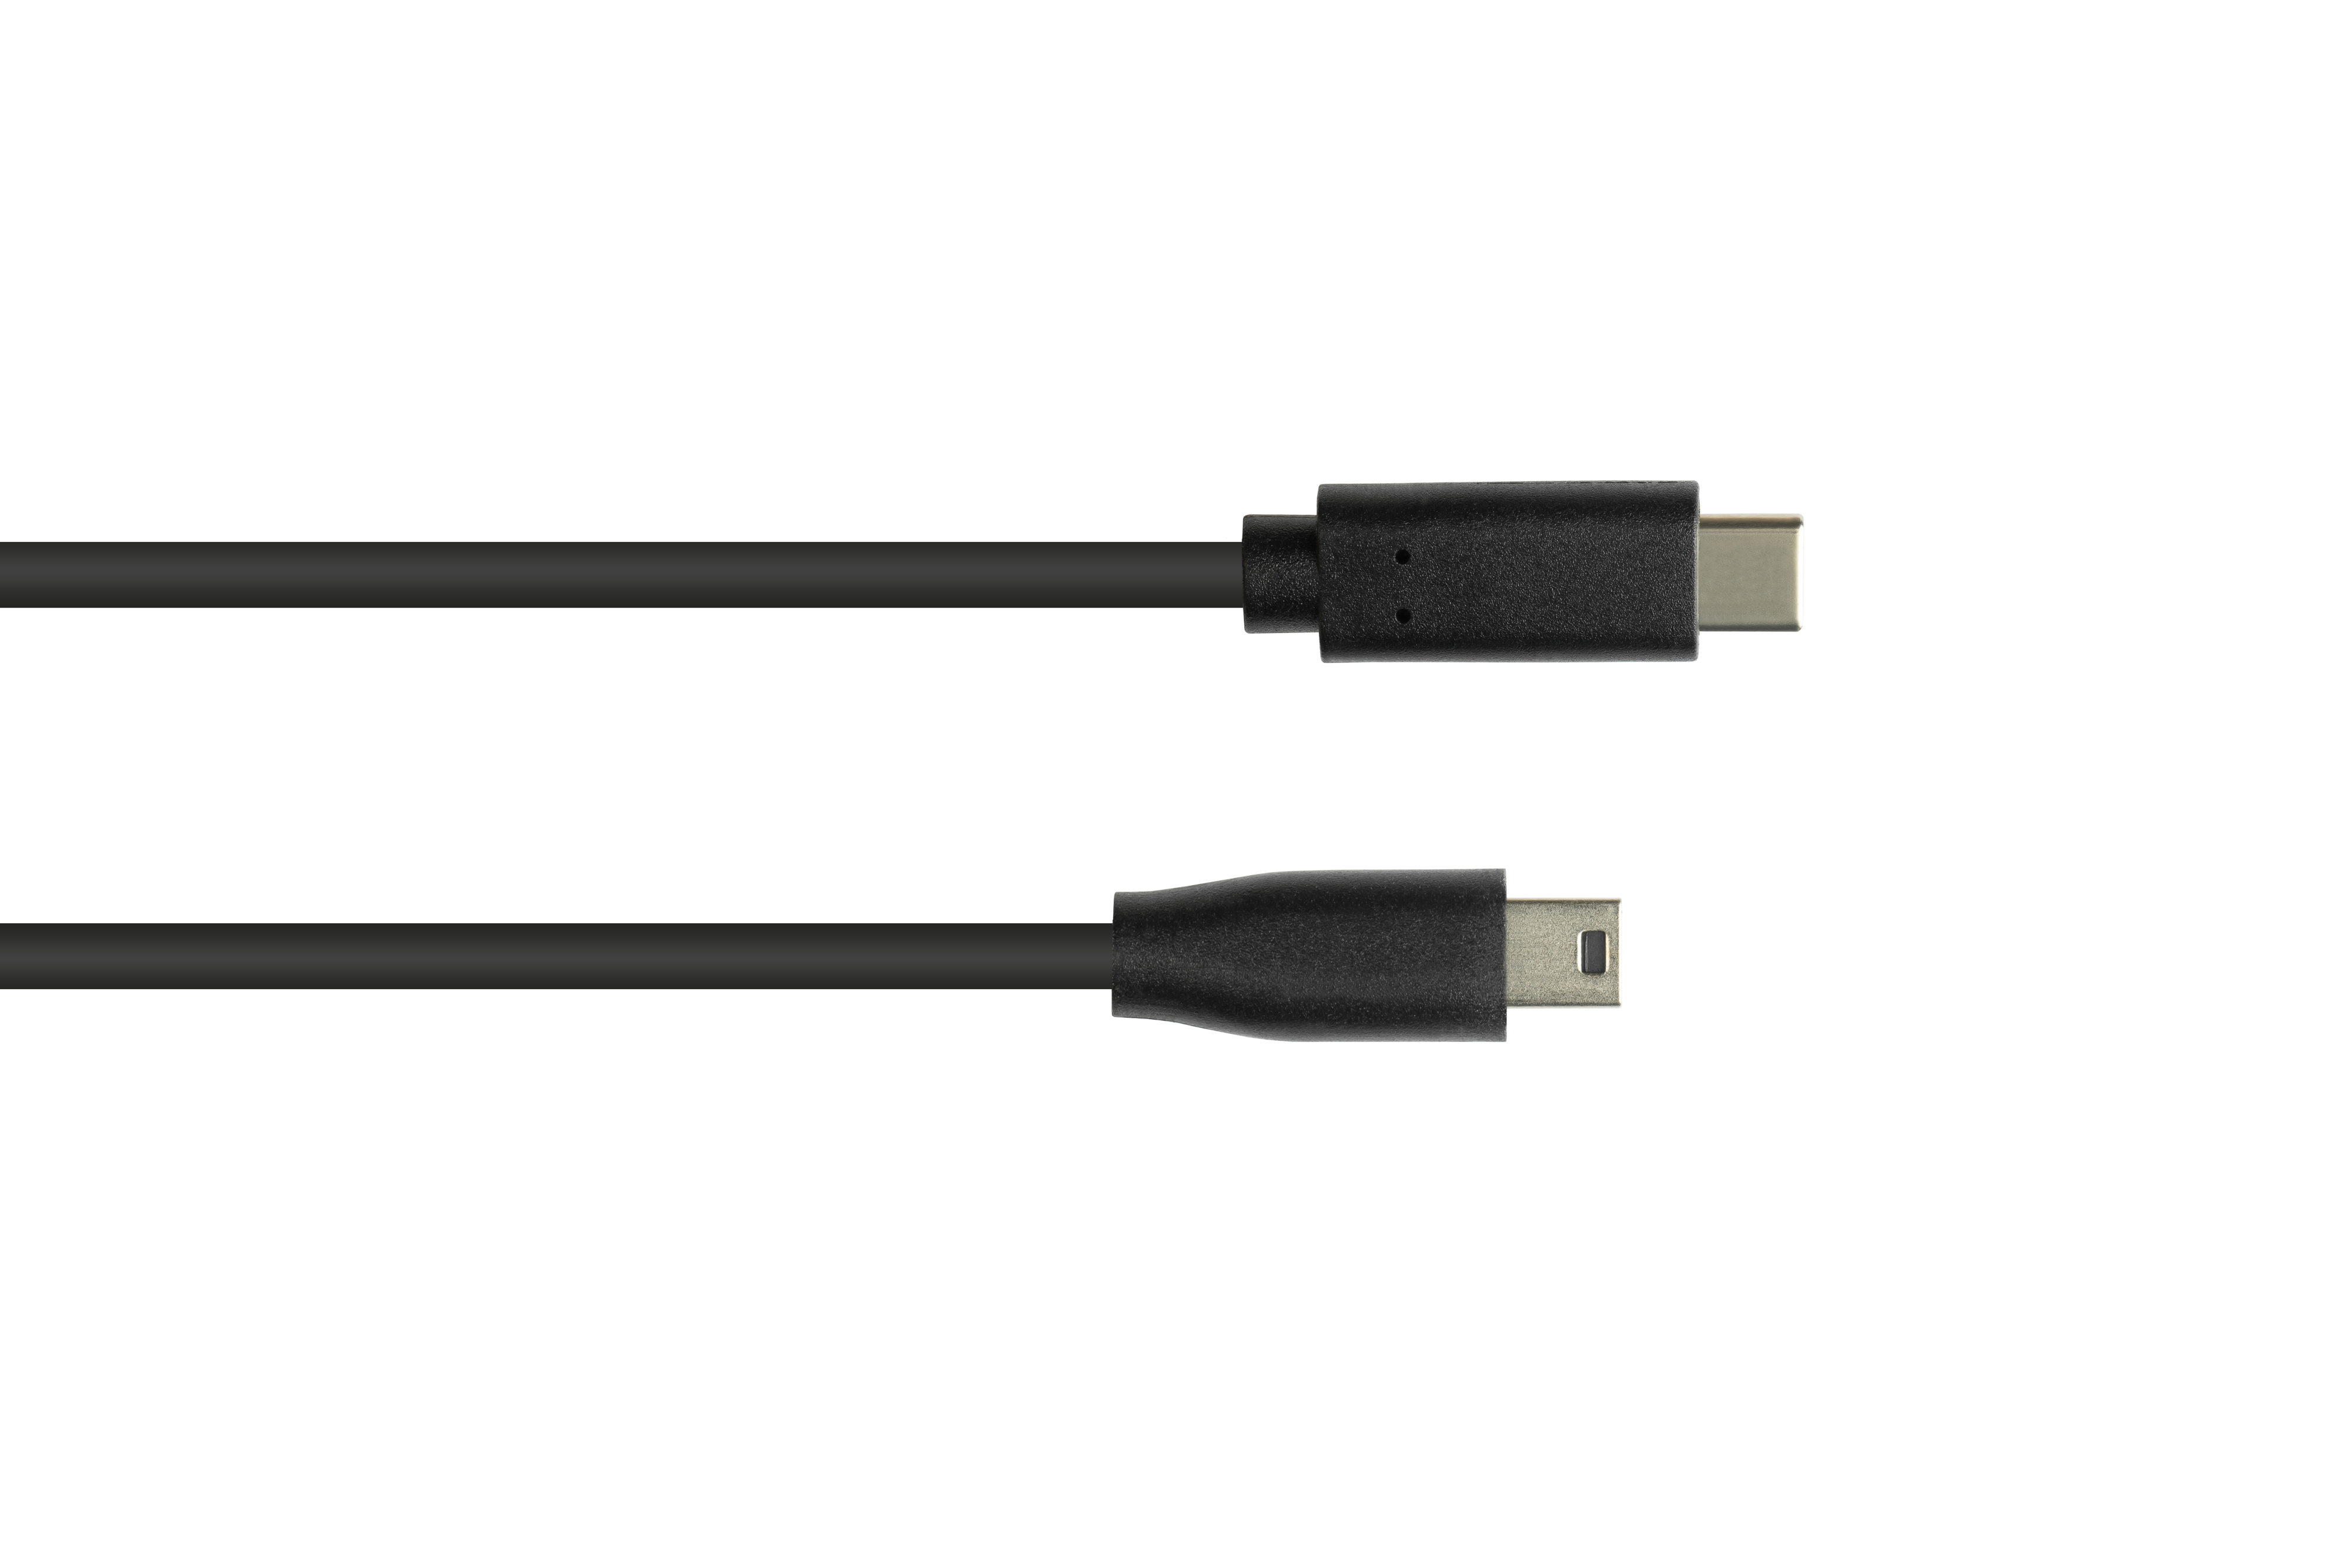 CONNECTIONS USB-C™ 2.0, GOOD schwarz Anschlusskabel Mini USB Stecker an Stecker 5-pin, B